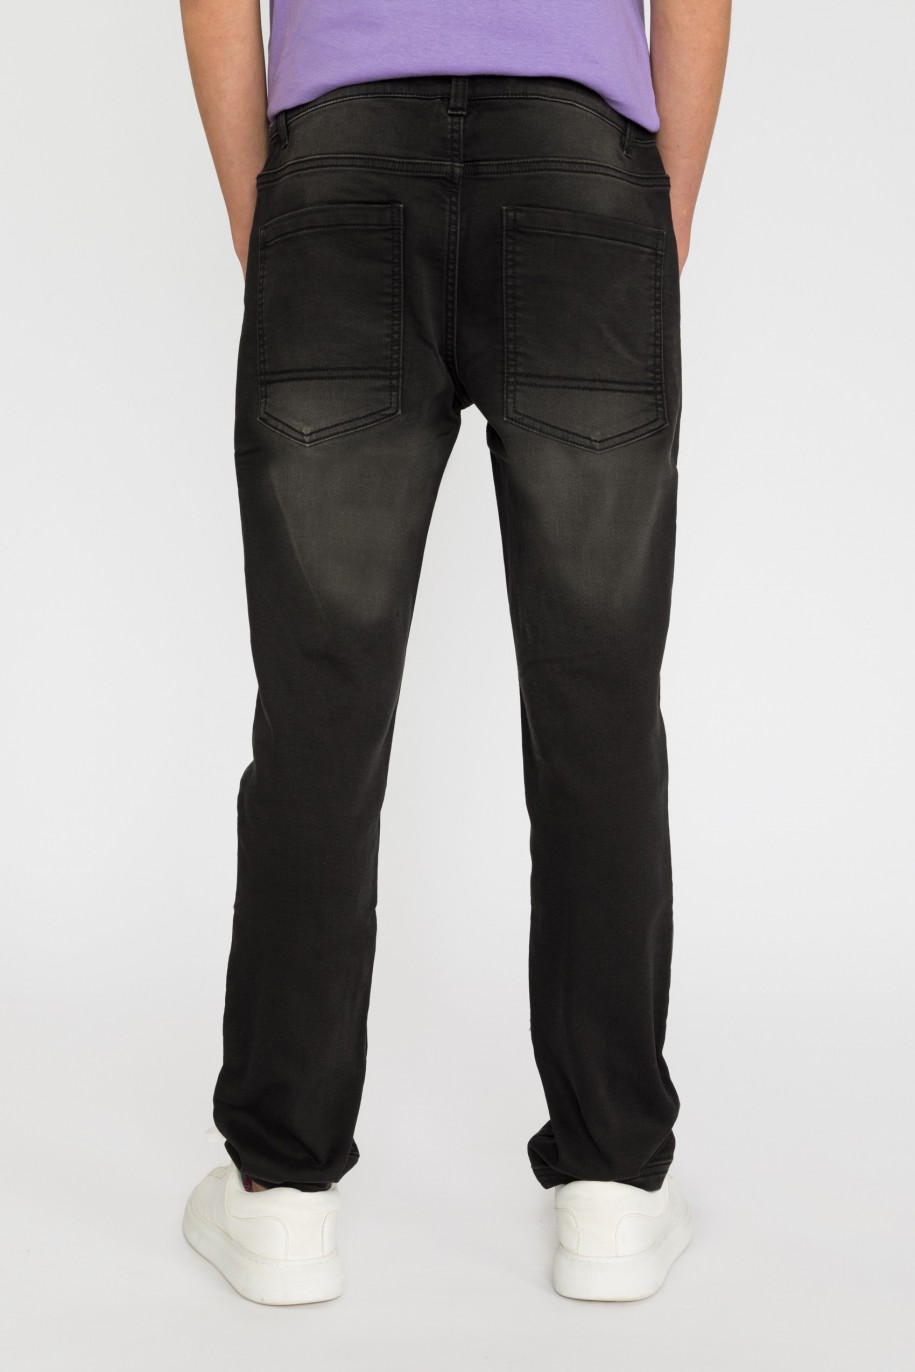 Czarne jeansowe spodnie dla chłopaka - 32099